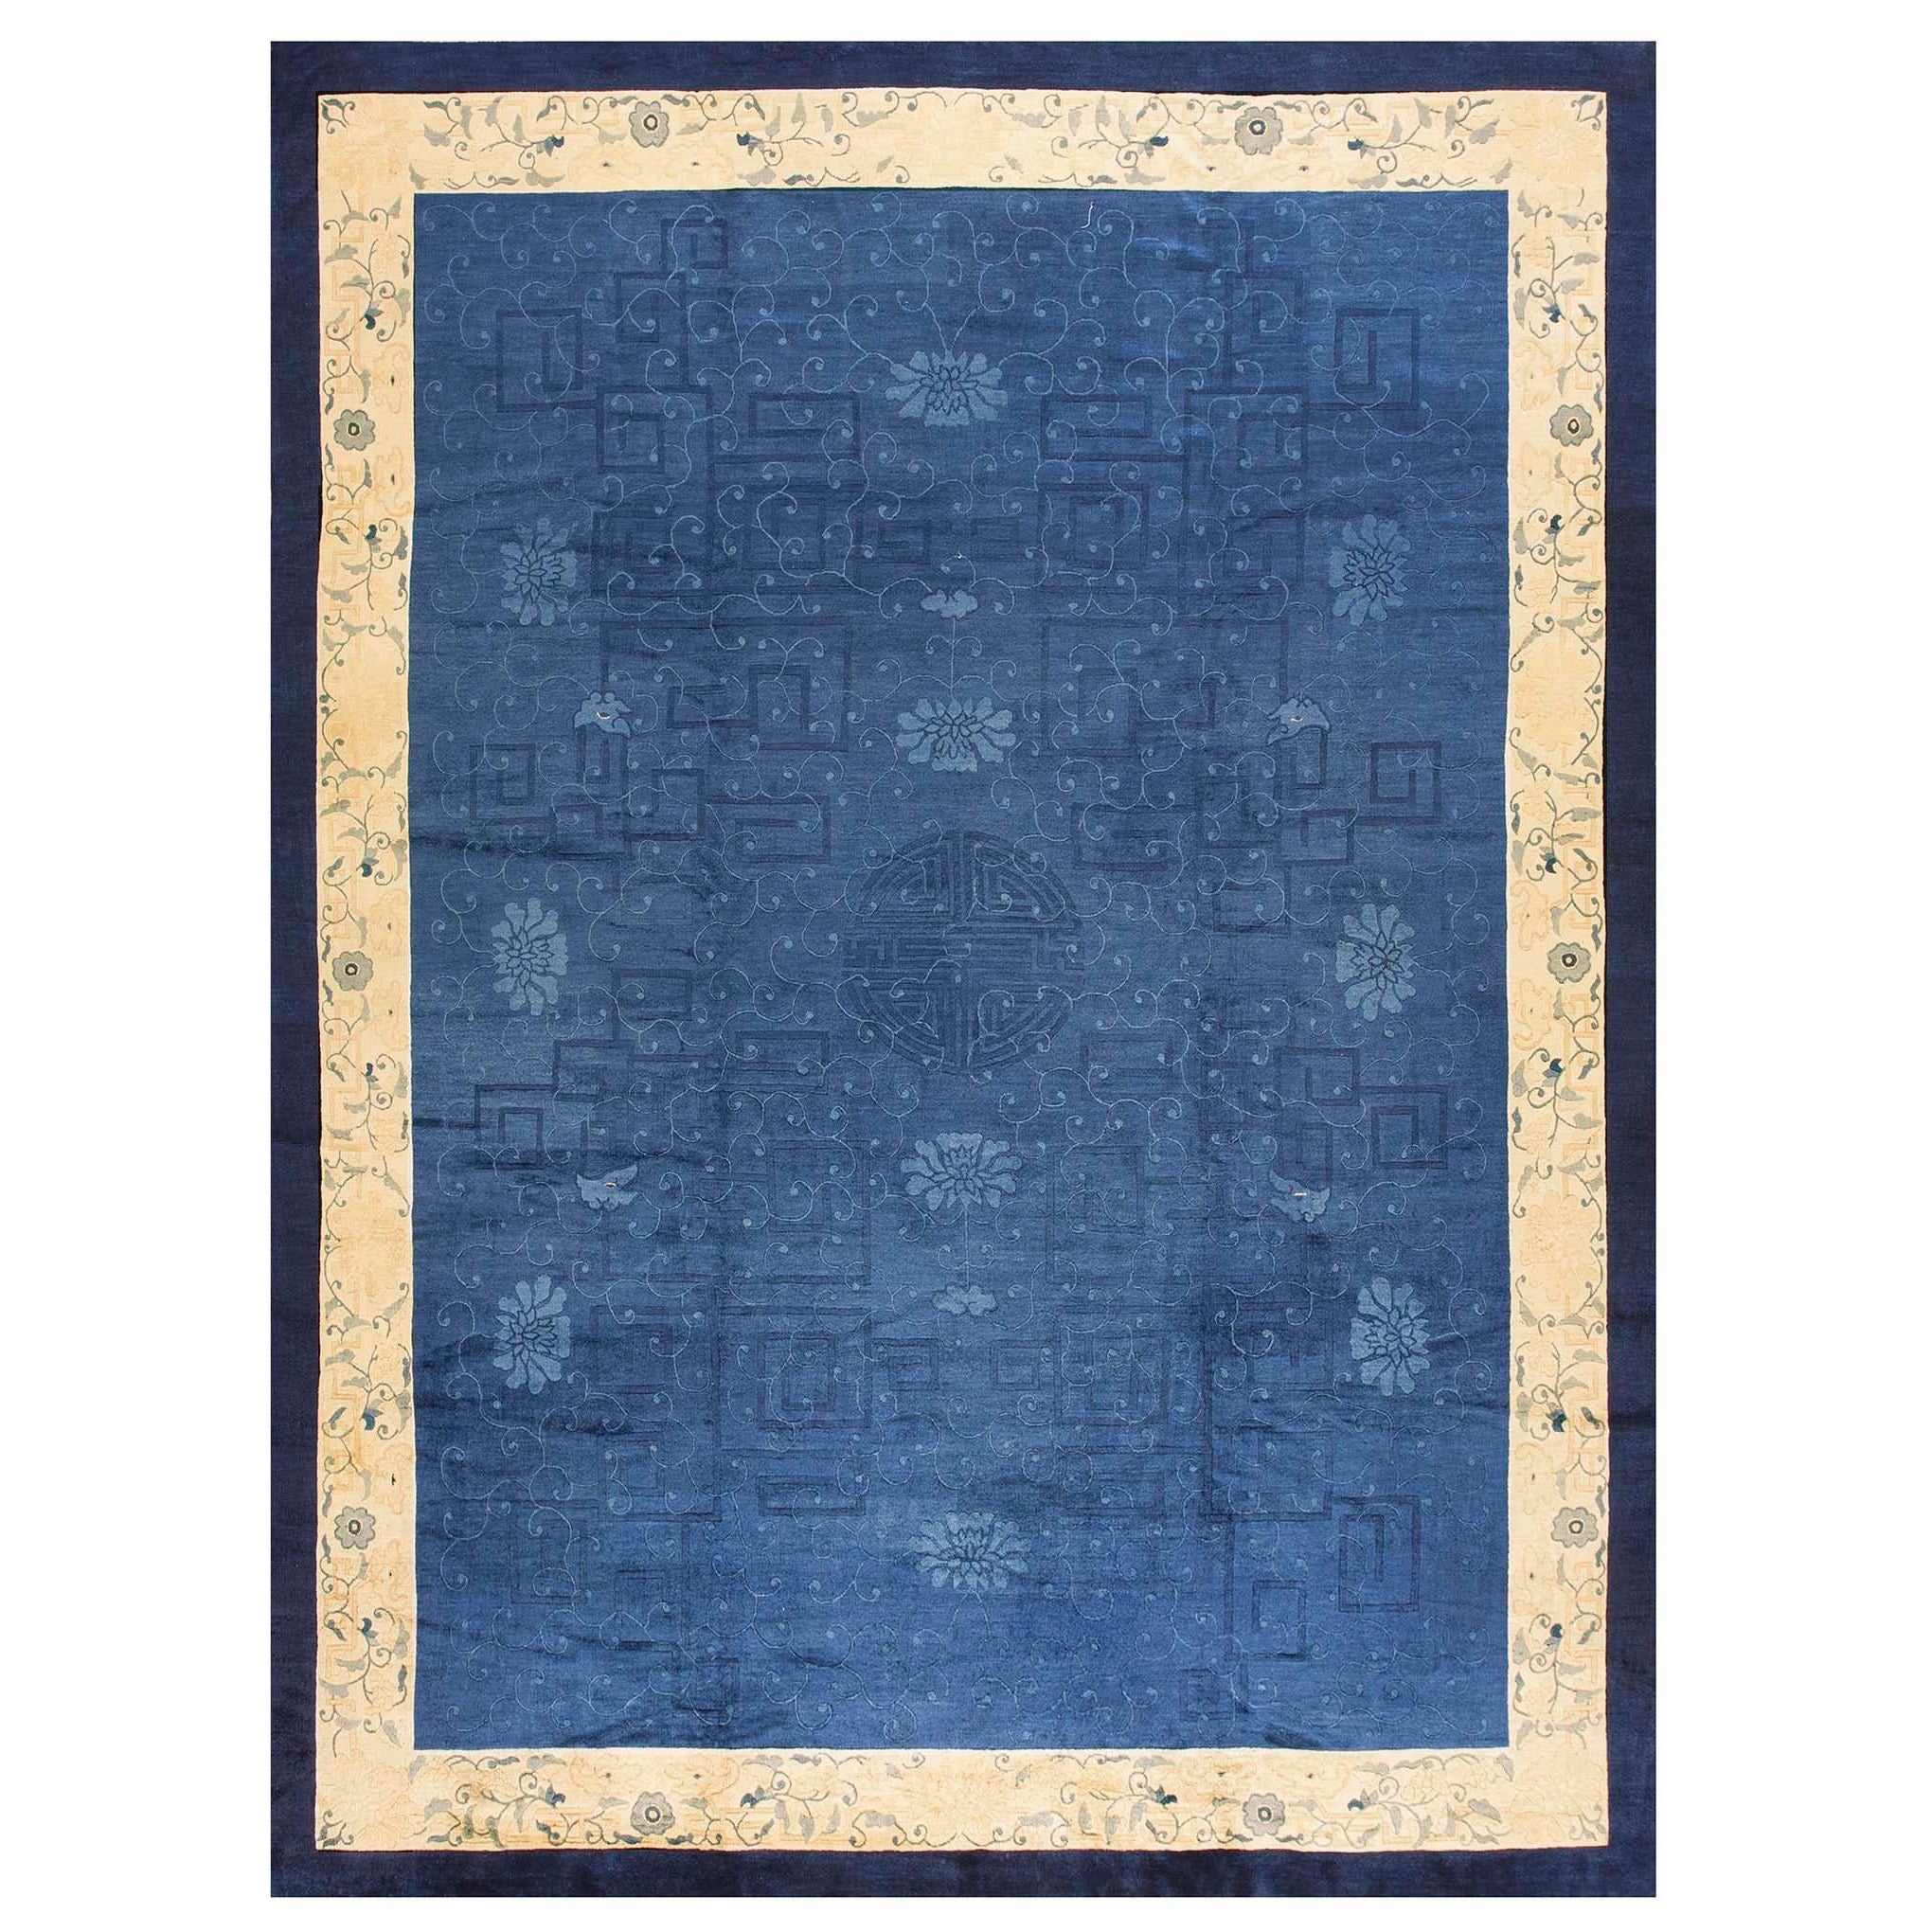 Chinesischer Pekinger Teppich des späten 19. Jahrhunderts ( 9' x 11'8" - 275 x 355 cm) 